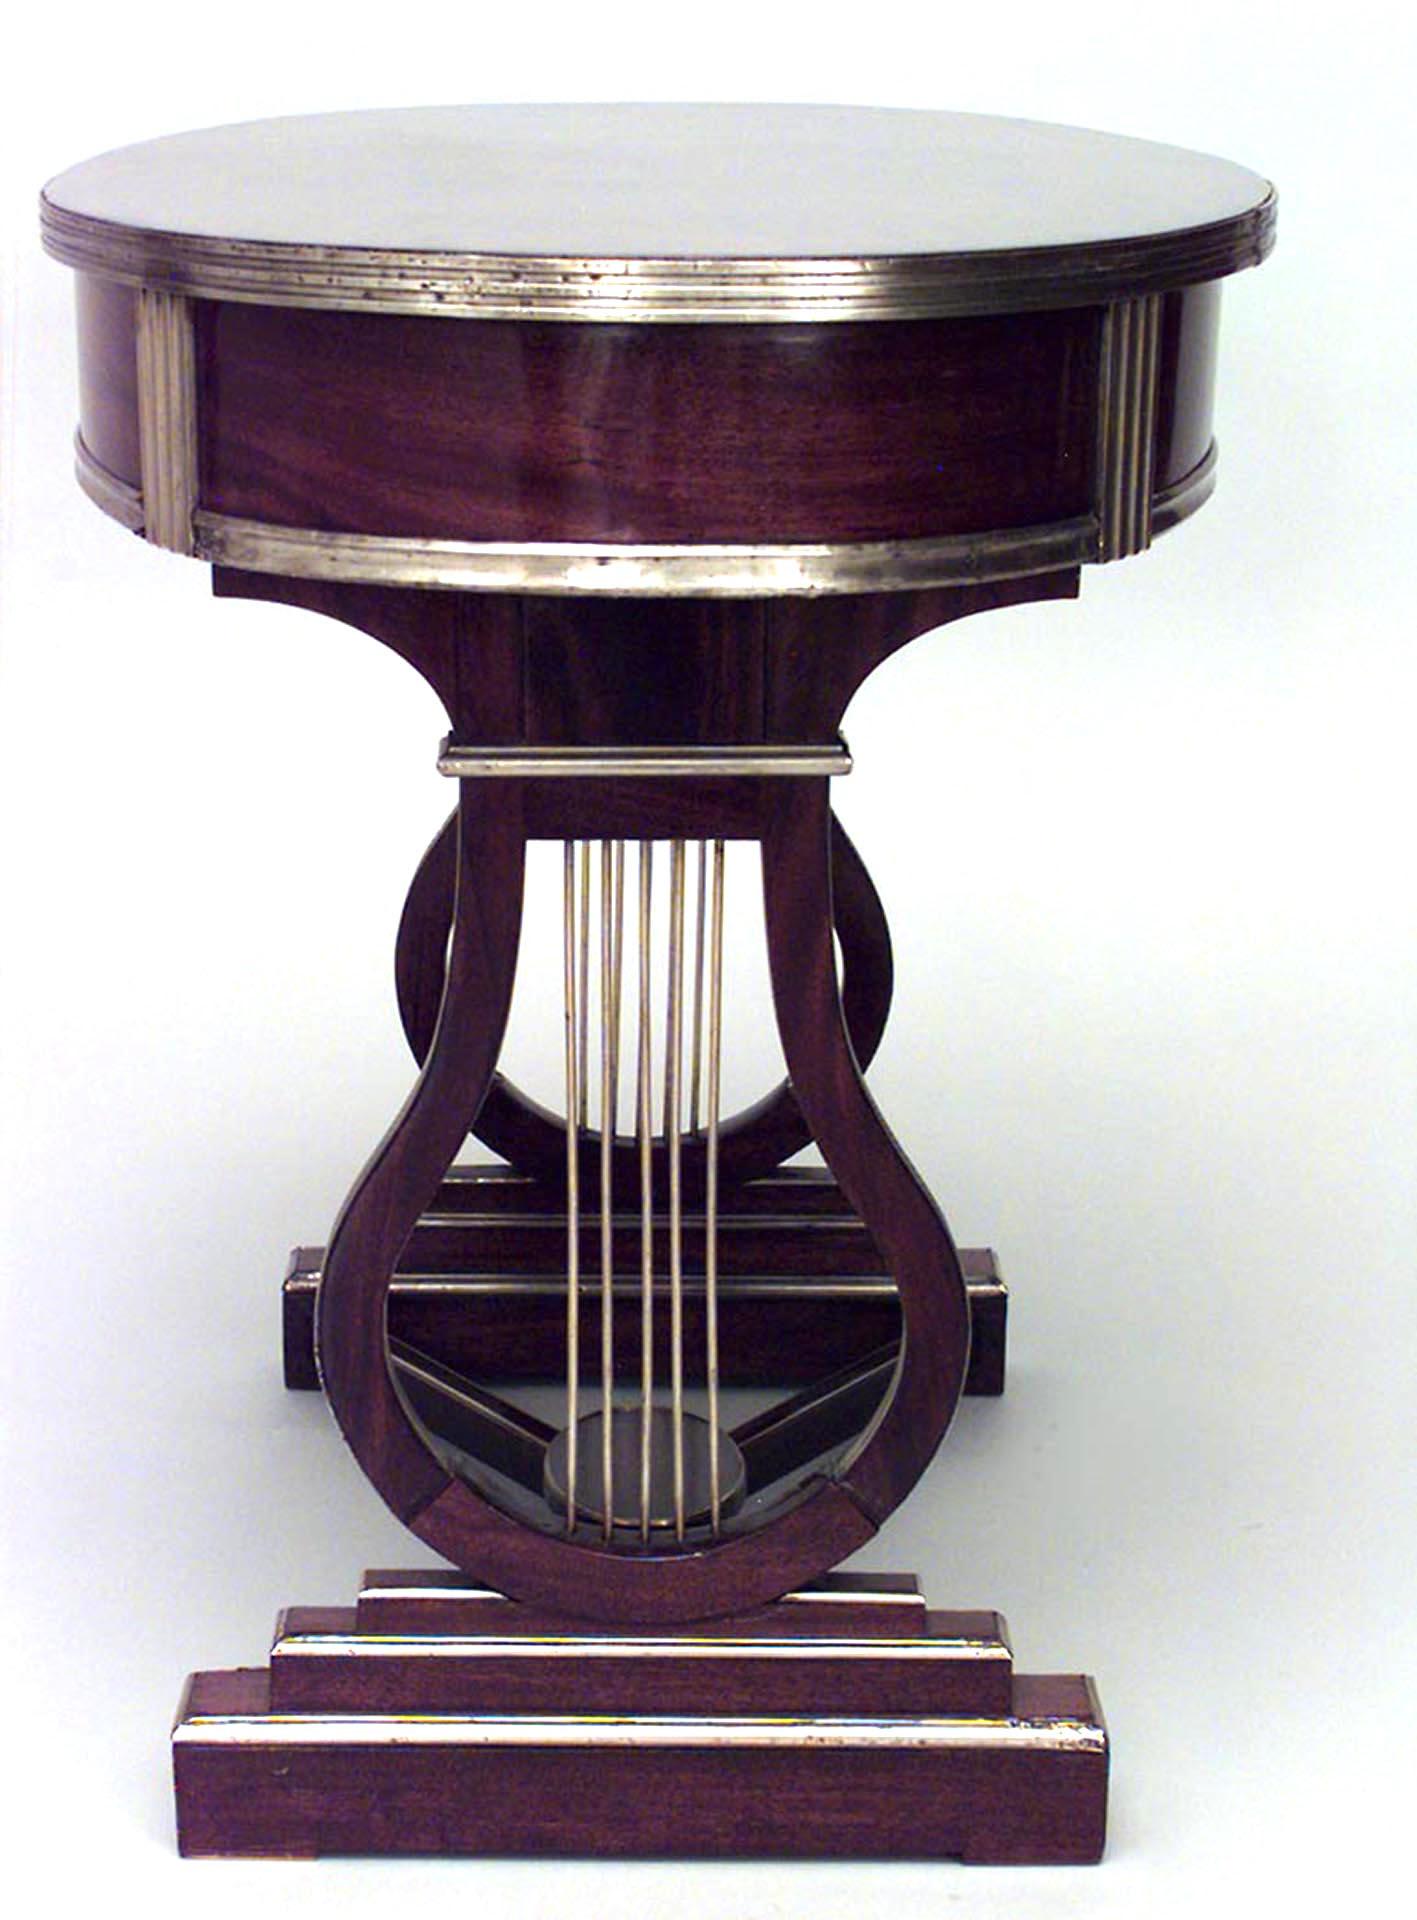 Table à écrire russe néoclassique (18/19e siècle) en acajou monté sur laiton, avec un plateau ovale au-dessus d'un tiroir en frise sur des supports en tréteaux en forme de lyre reliés par une entretoise.
